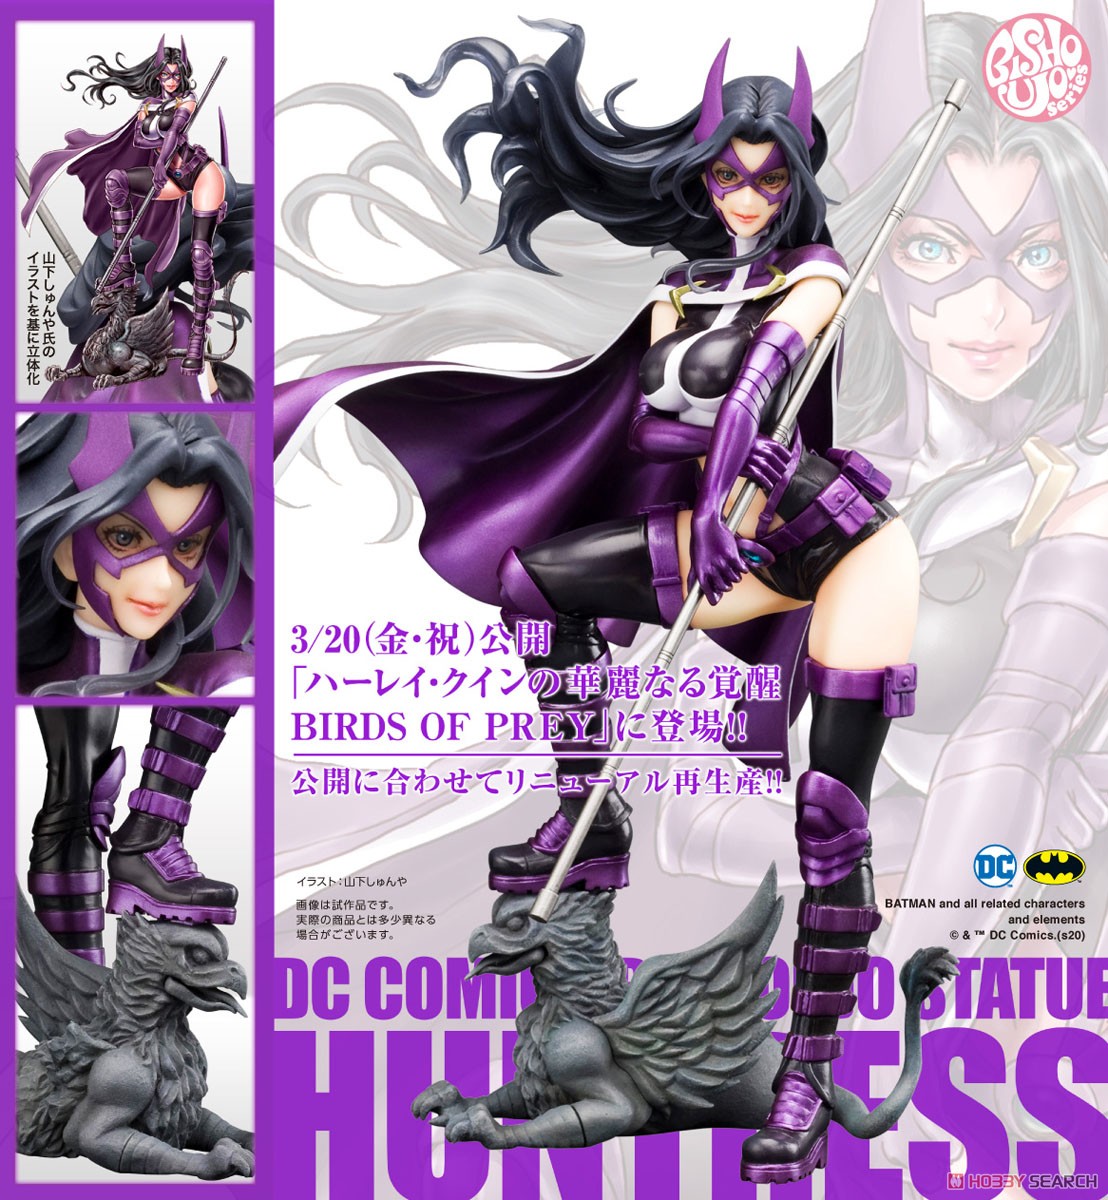 【再販】DC COMICS美少女『ハントレス 2nd Edition』DC UNIVERSE 1/7 完成品フィギュア-012